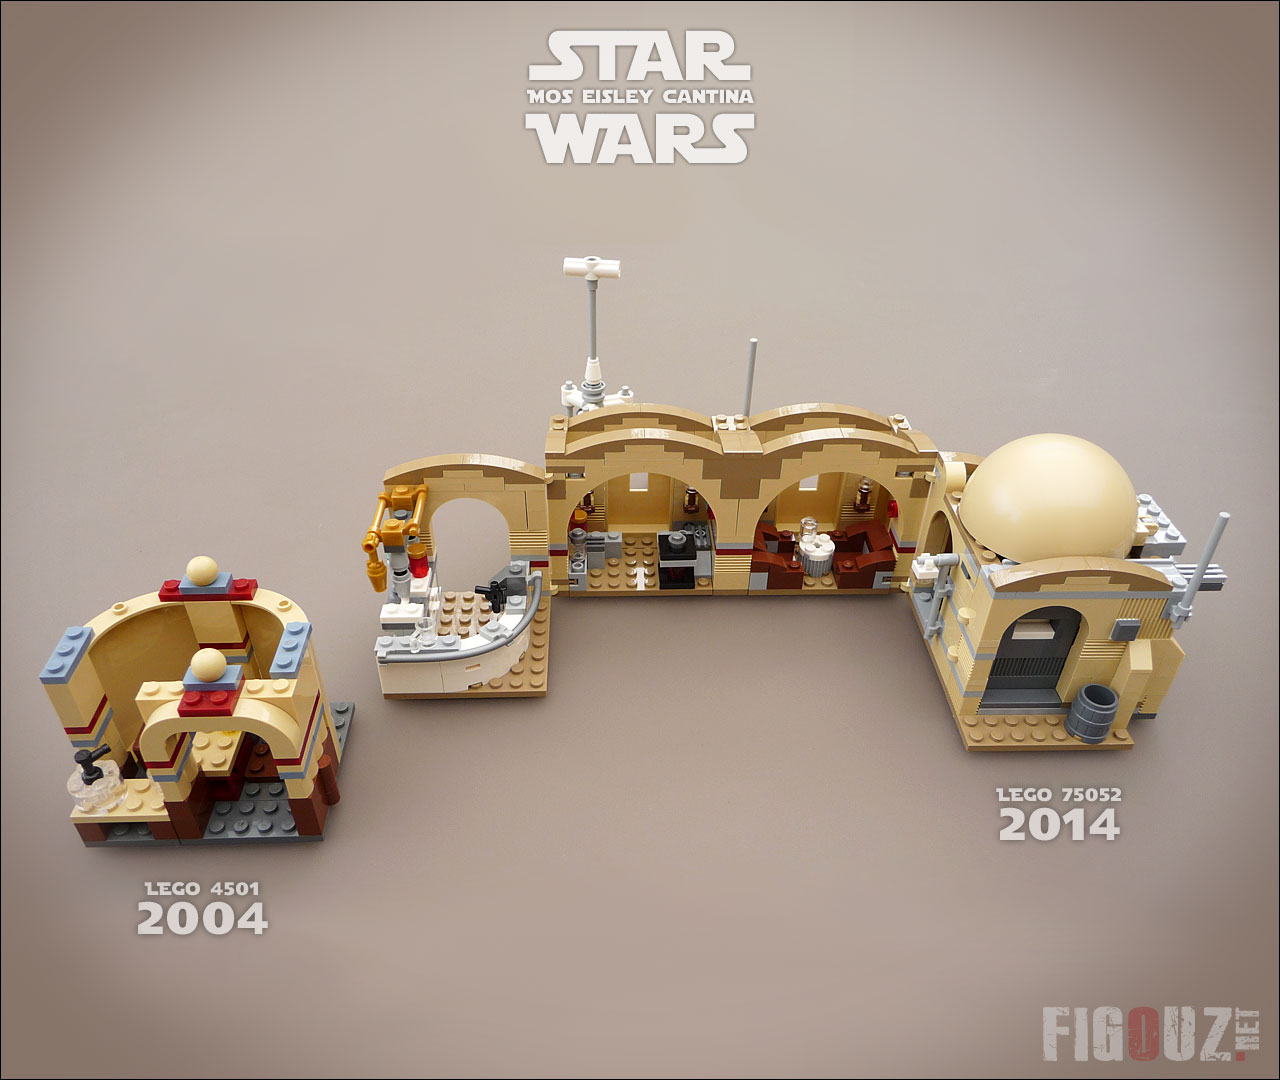 Lego 75052 Mos Eisley Cantina - Lego Star Wars